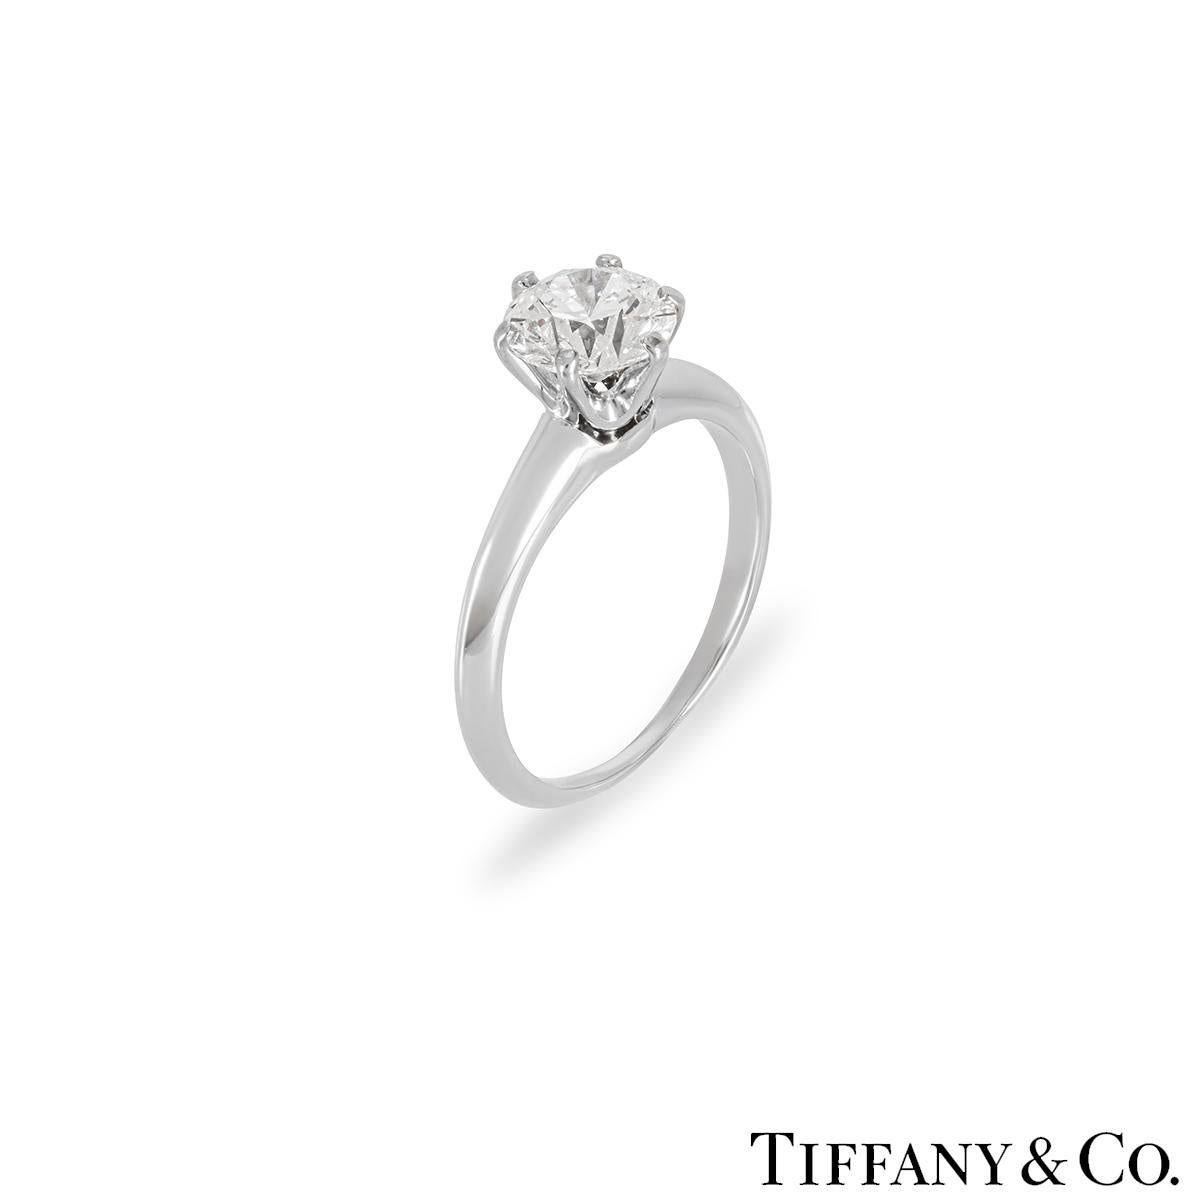 Ein atemberaubender Solitär-Diamantring aus Platin von Tiffany & Co. aus der Setting Collection. Der Solitär besteht aus einem runden Diamanten im Brillantschliff, der in der Mitte in einer 6-Zacken-Fassung gefasst ist. Er wiegt 1,18ct, Farbe D und